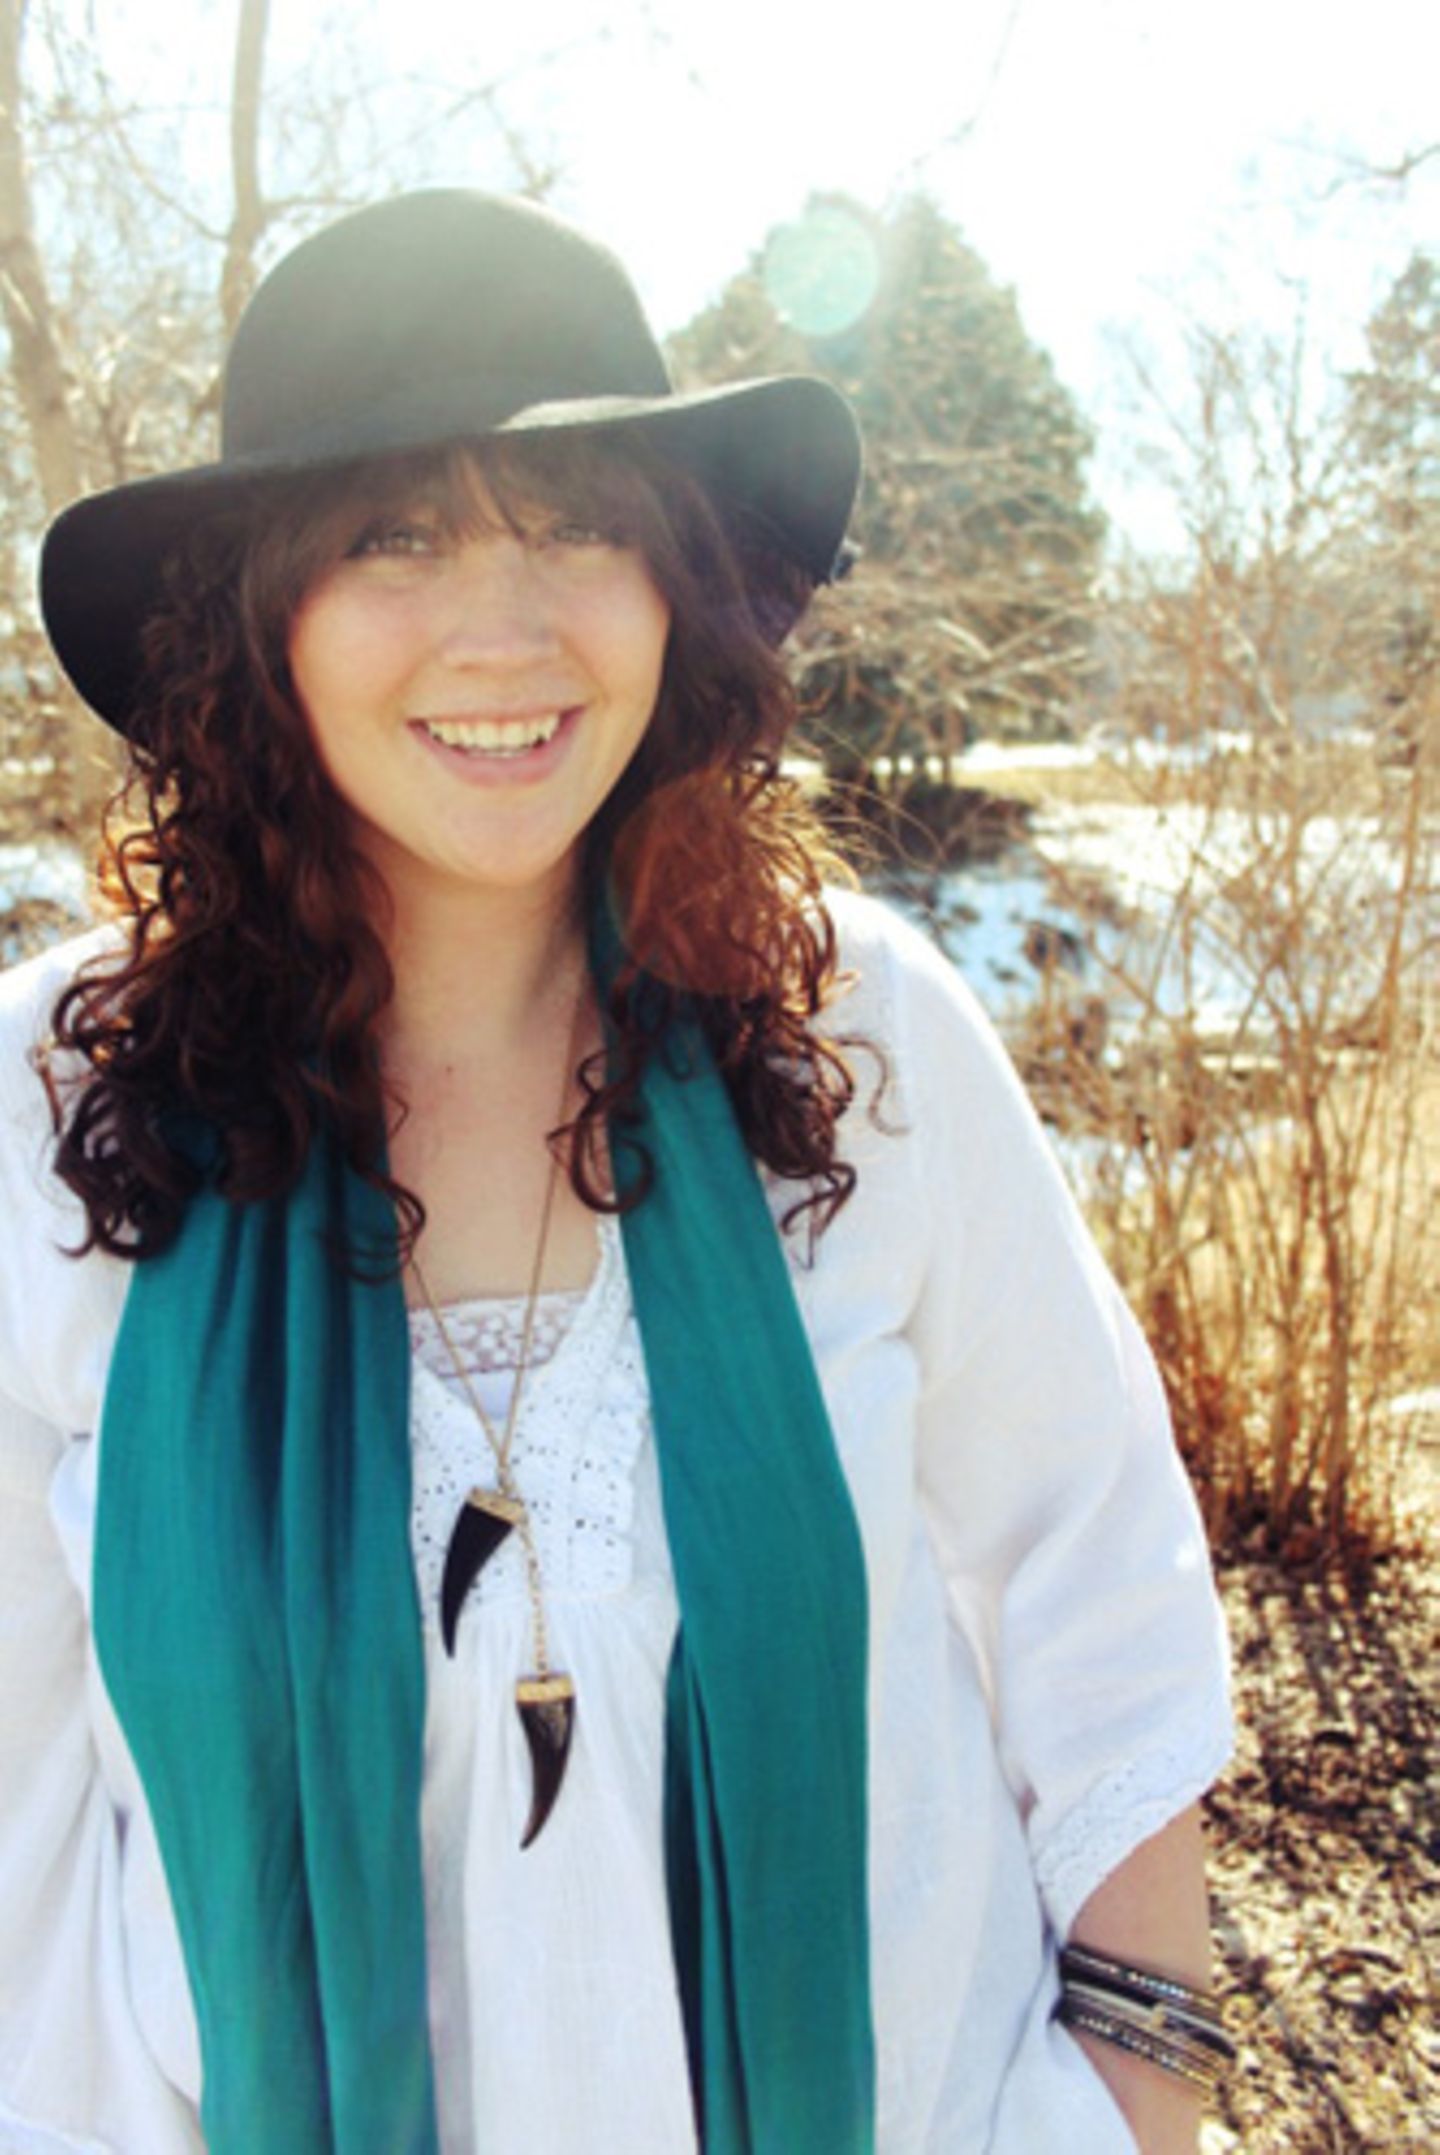 Auch die amerikanische Bloggerin Hannah Rupp liebt Second-Hand-Mode. Auf An Old Story postet sie regelmäßig Fotos ihrer bunt zusammengemixten Outfits. Der Hippie-Look mit weißer Tunika und schwarzem Schlapphut hat uns besonders gut gefallen.